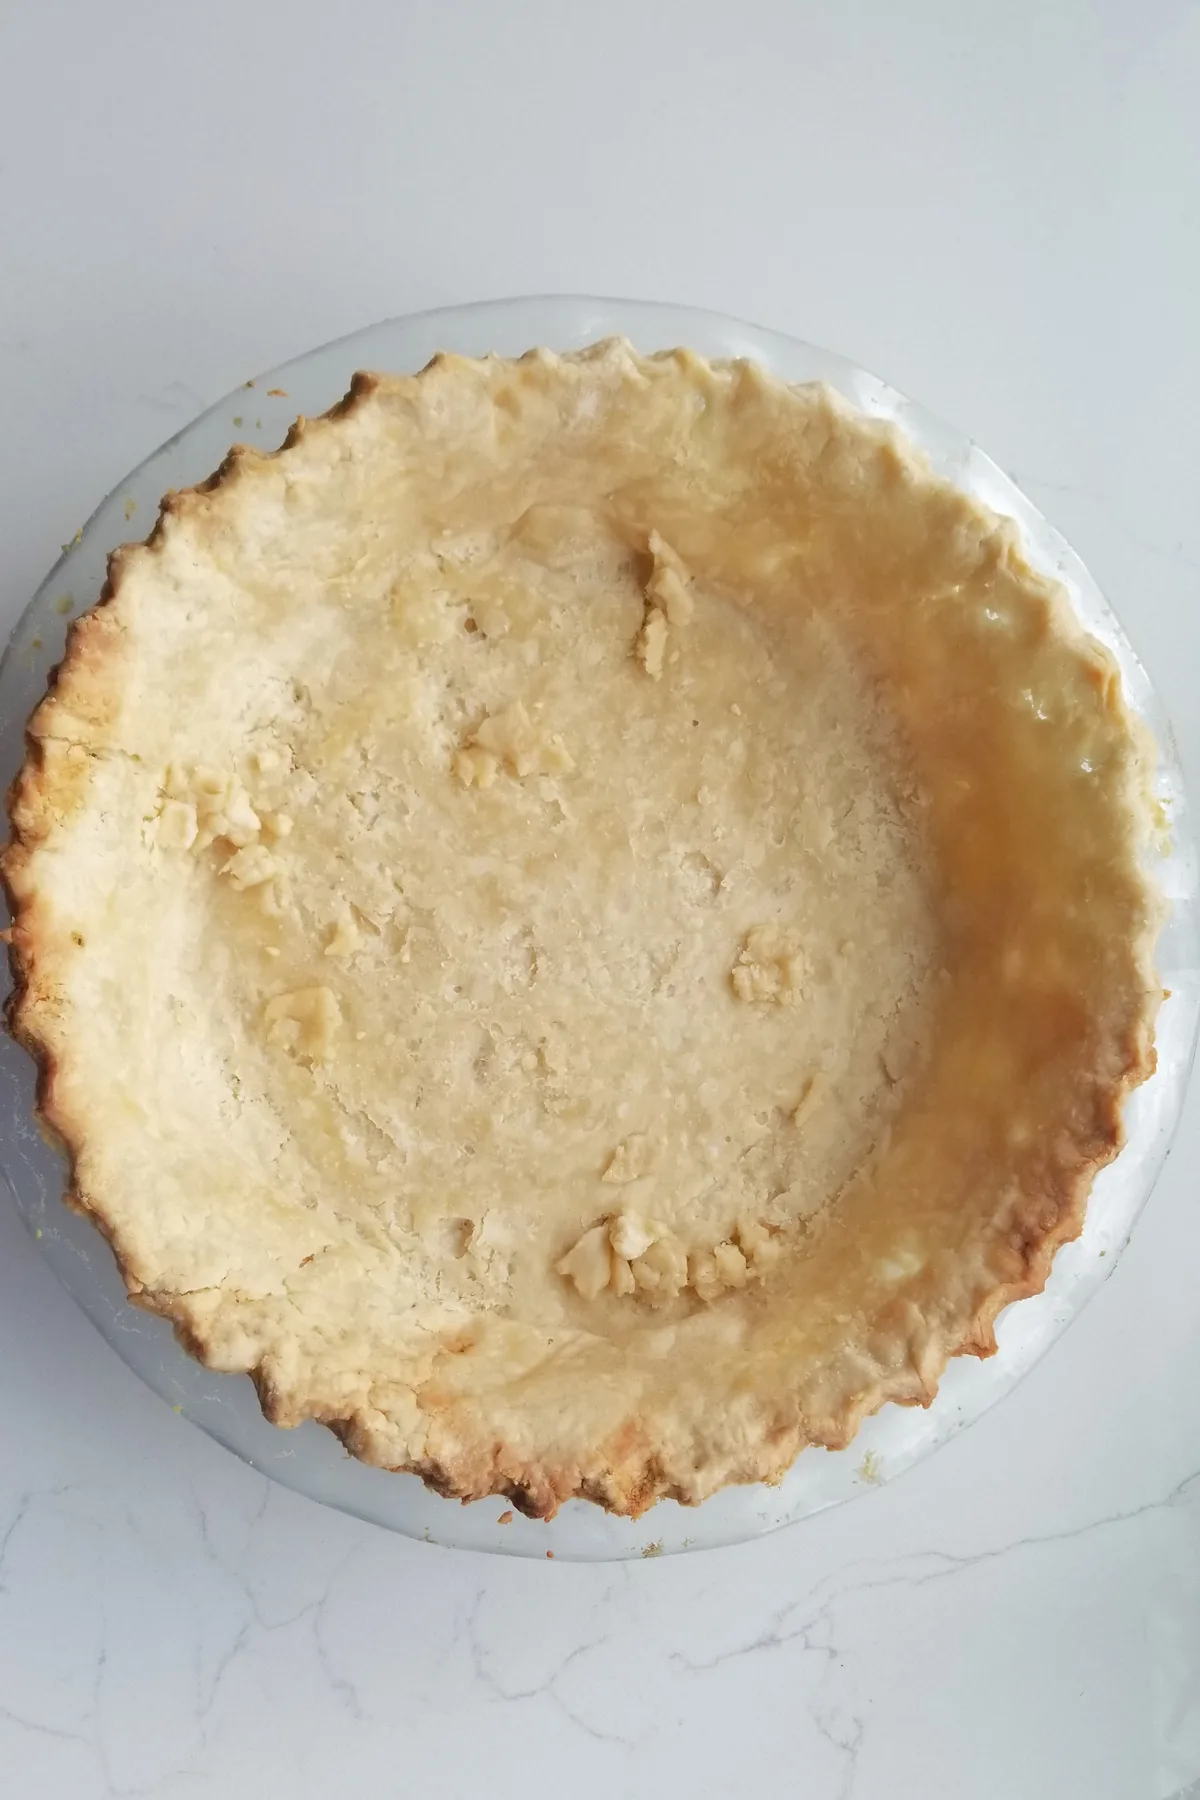 a par baked pie crust